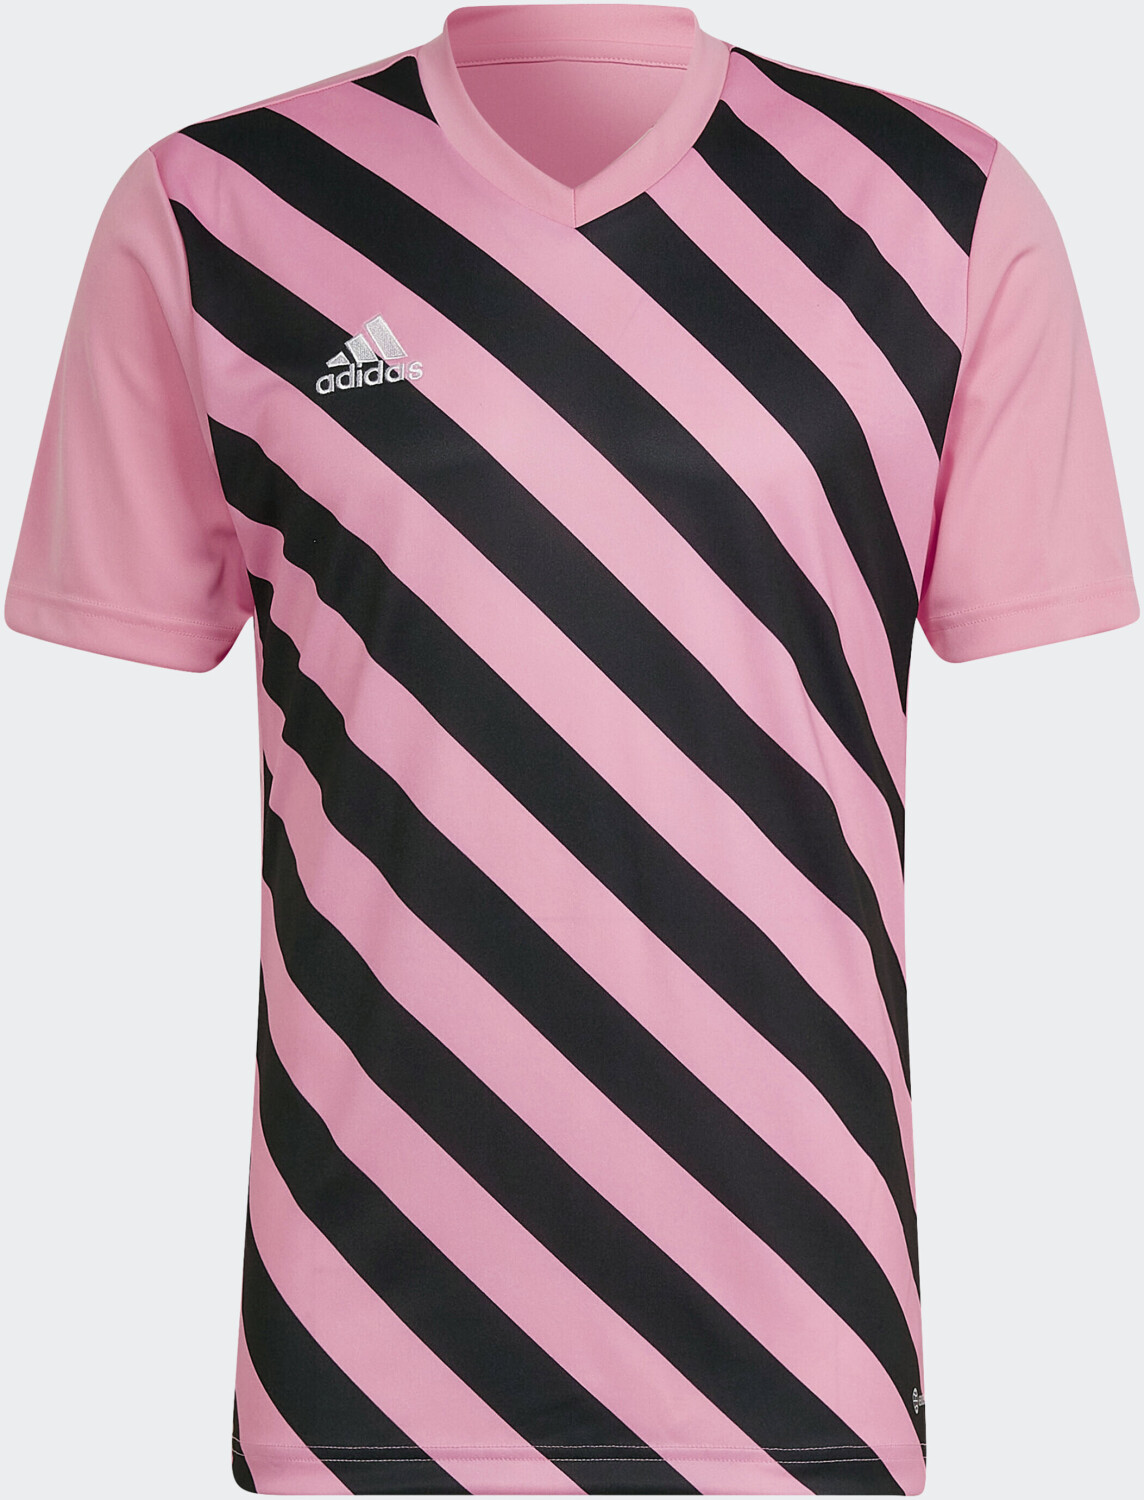 Entrada Graphic 22 € semi glow/black 13,12 bei ab pink Adidas Trikot | Preisvergleich